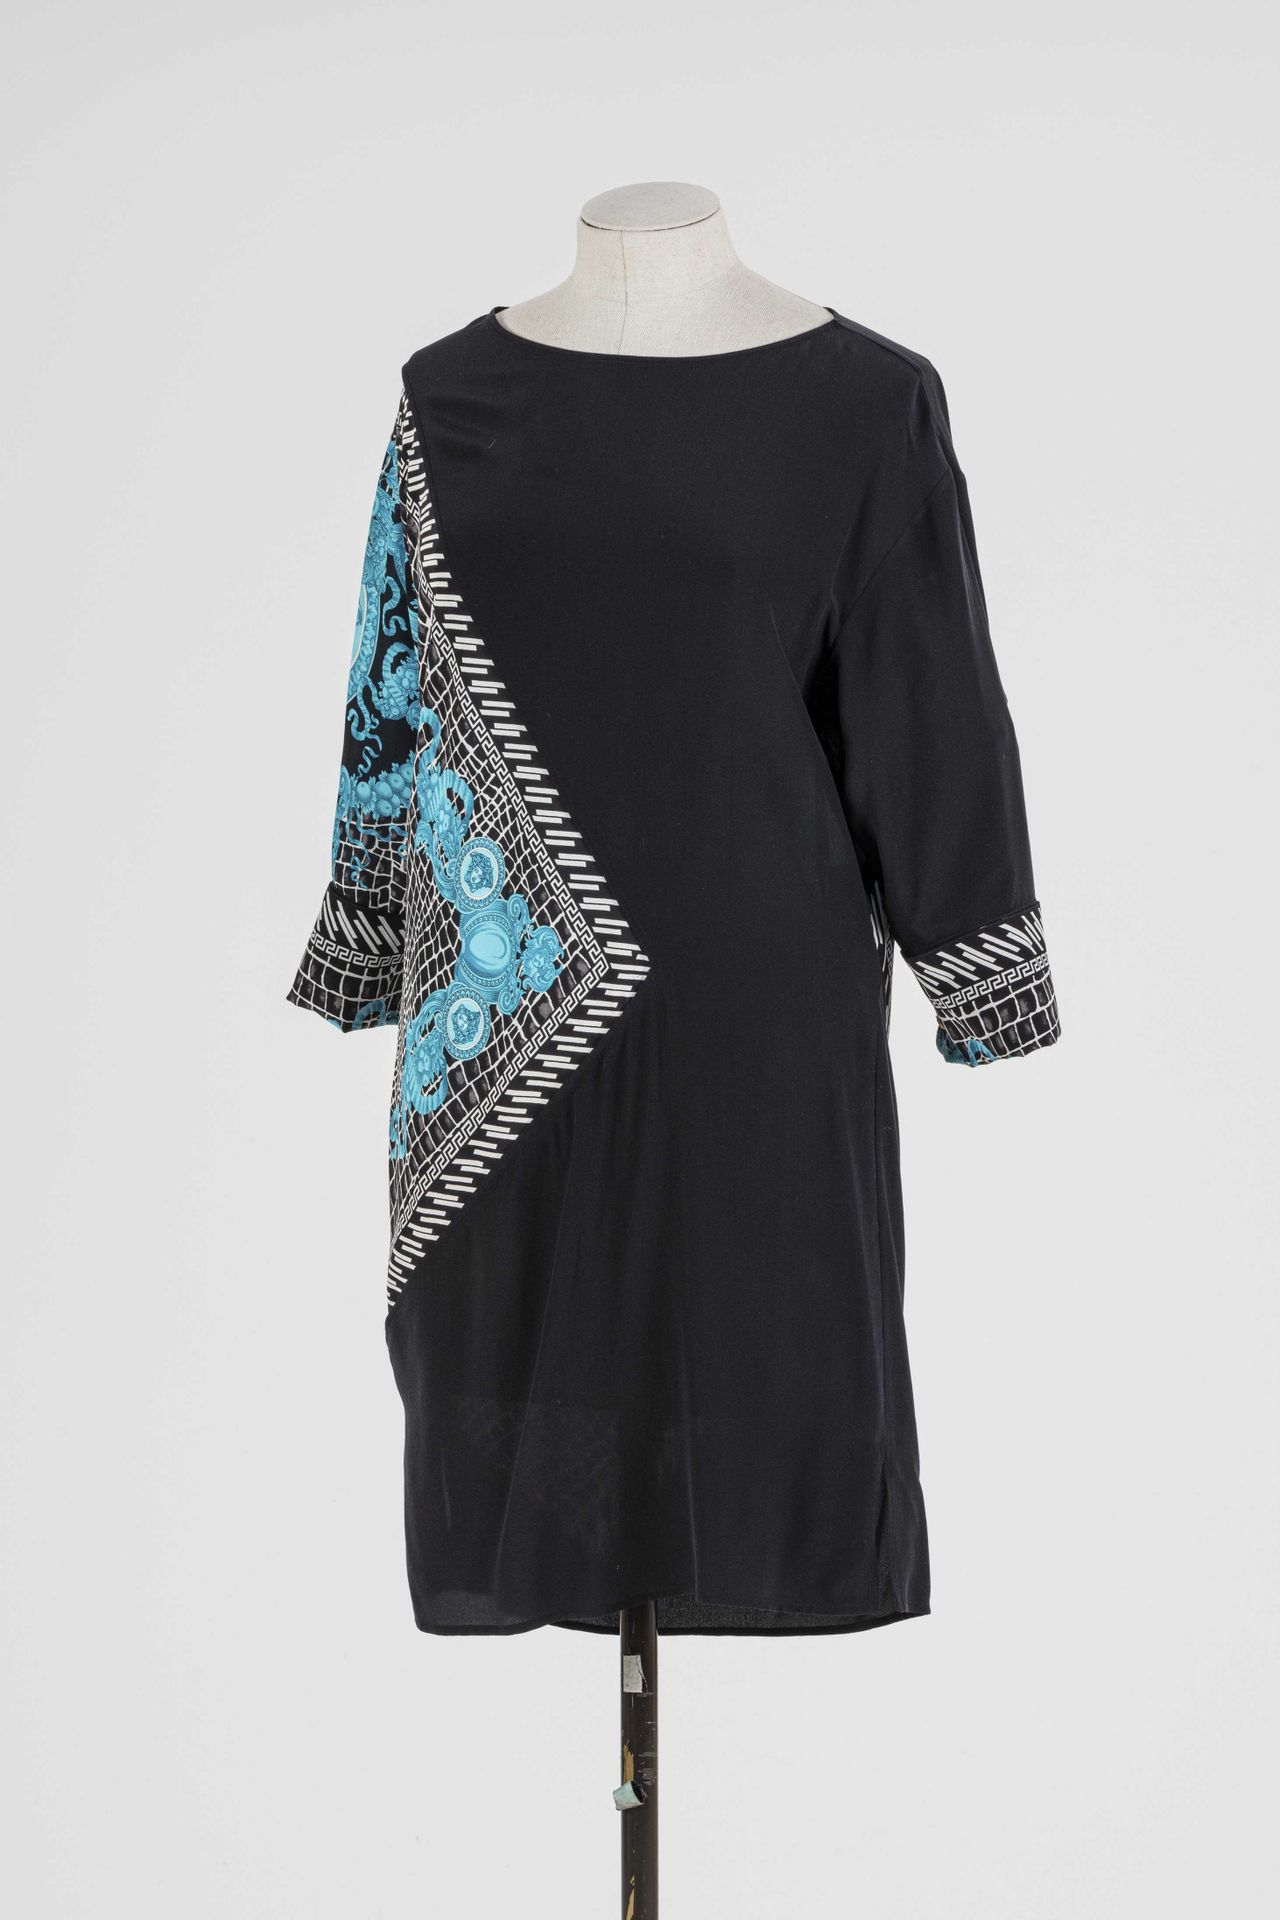 Null VERSACE：黑色丝绸长衫连衣裙，上面有造型怪异的蓝白花朵和树叶图案，3/4长袖。

T.38